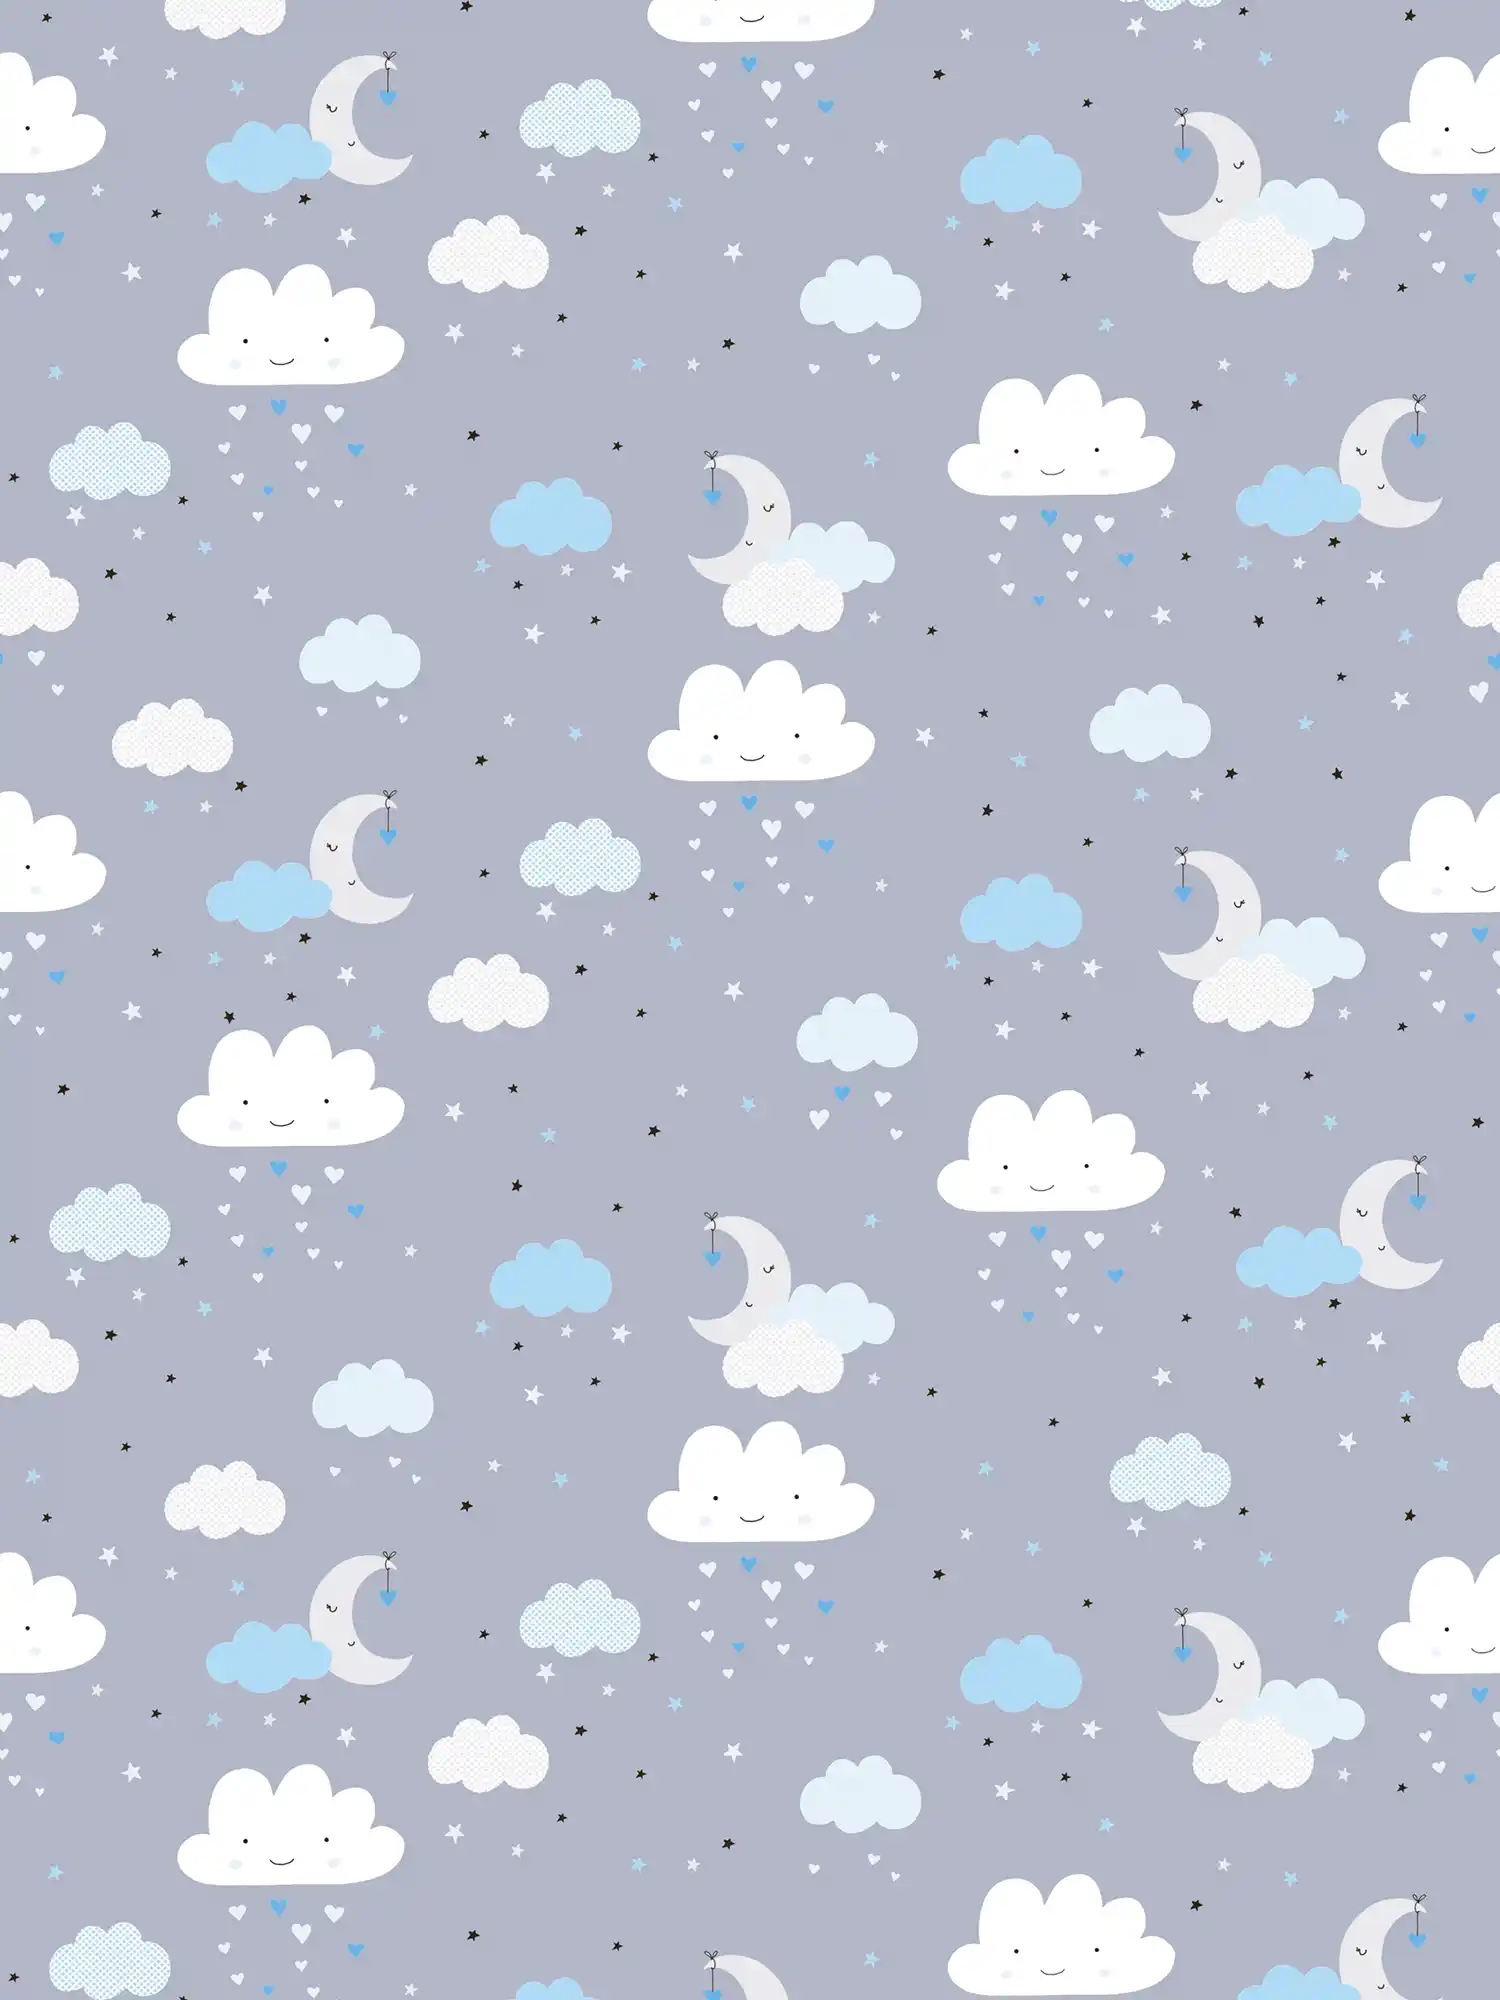         Tapete Kinderzimmer Junge Nachthimmel Wolken – Blau, Grau, Weiß
    